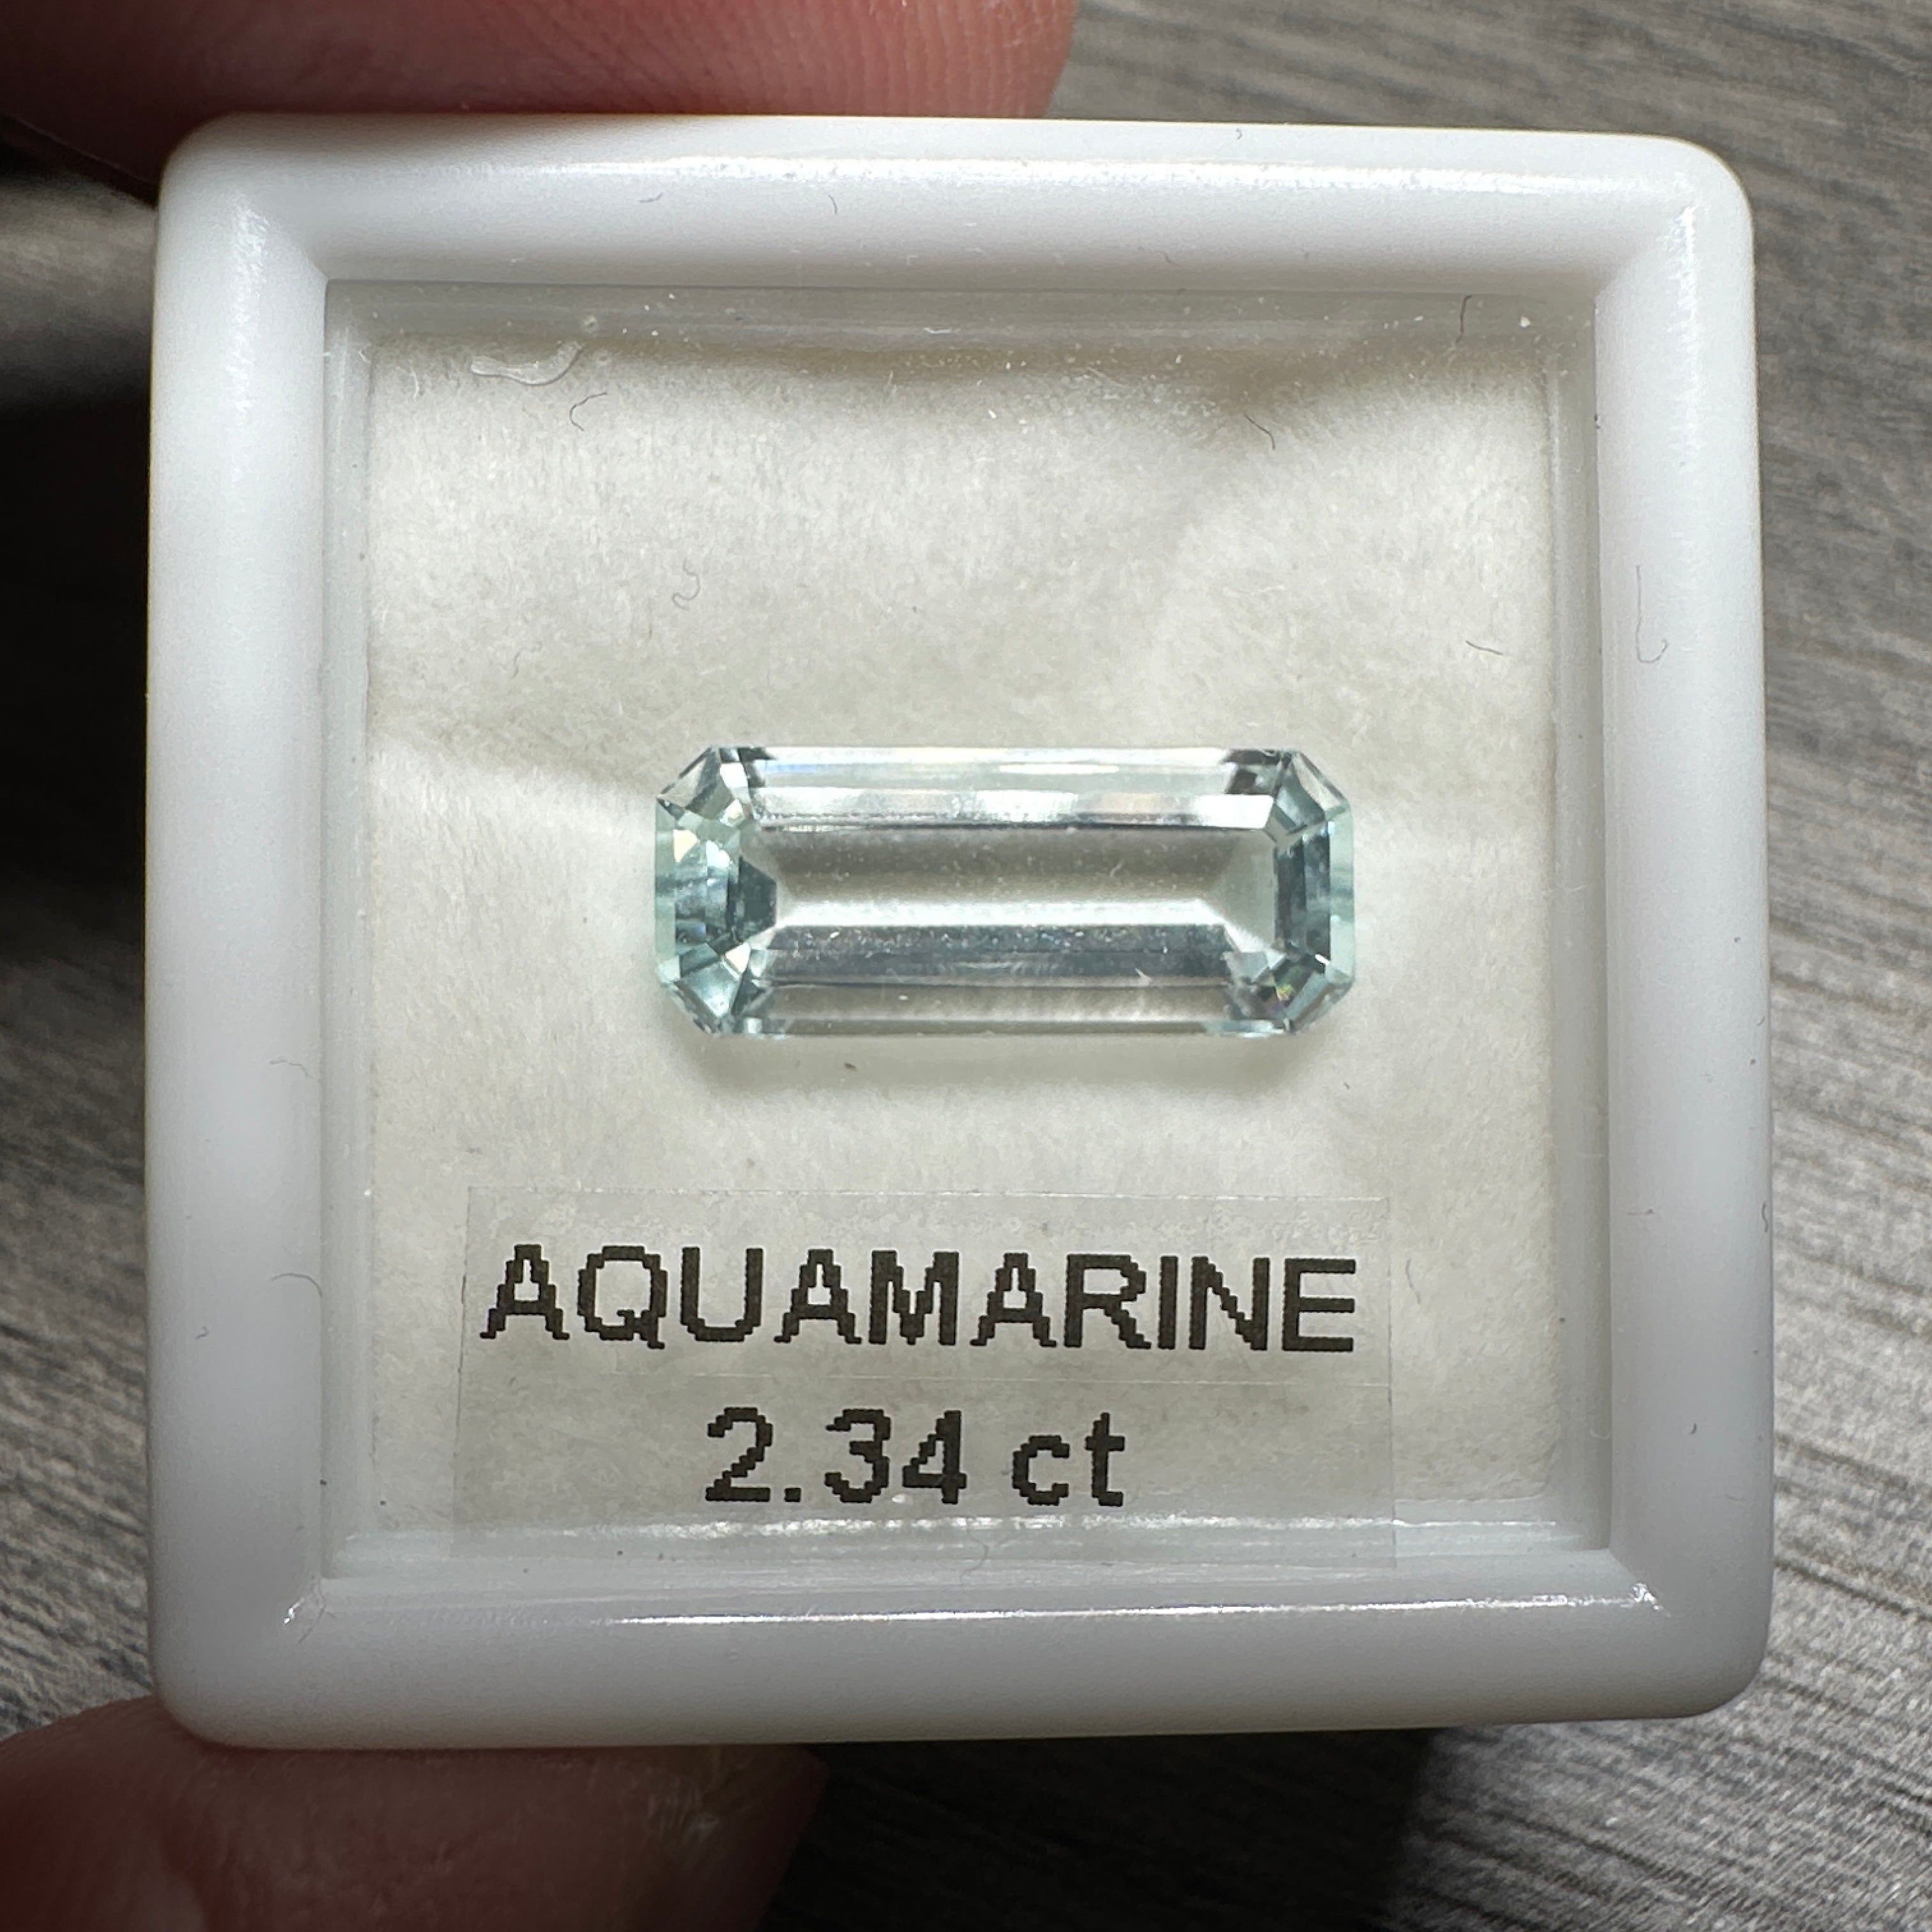 2.34ct Aquamarine, Zambia, Unheated Untreated